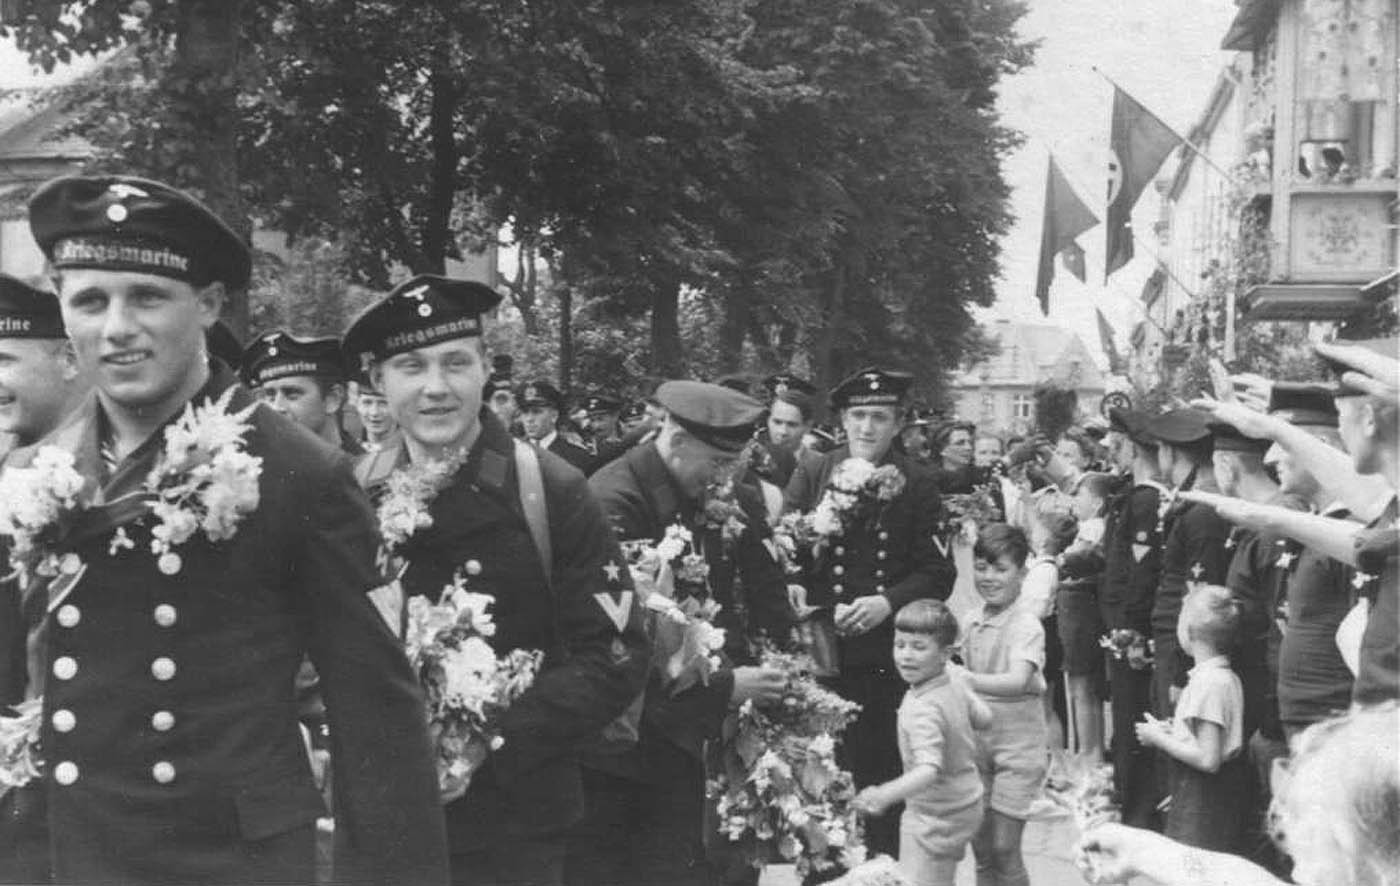 Begrüßung der aus Norwegen heimgekehrten Besatzung der Georg Thiele Helmut Baltz (links im Bild) war damals Funkhauptgefreiter und frisch mit dem Eisernen Kreuz 2. Klasse ausgezeichnet